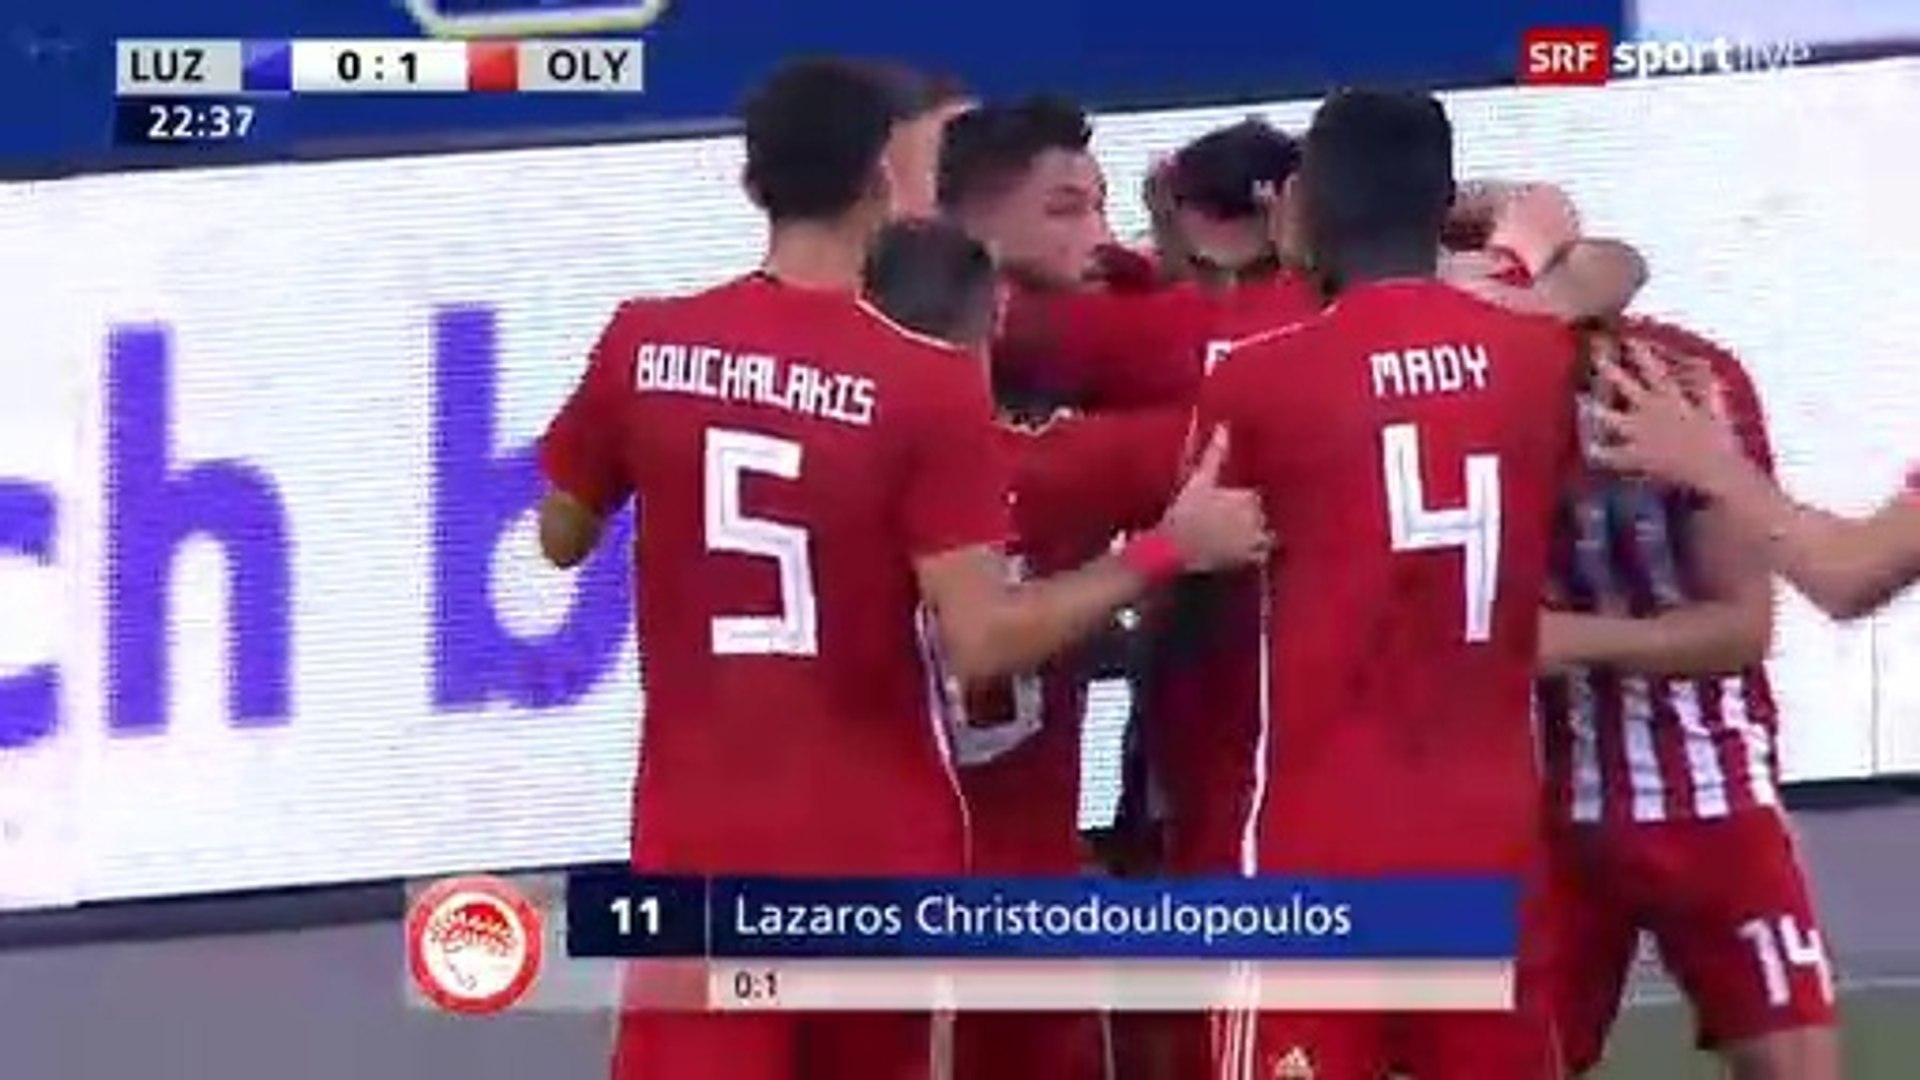 0-1 Lazaros Christodoulopoulos AMAZING Goal - Luzern vs Olympiakos Piraeus  - 16.08.2018 [HD] - video Dailymotion